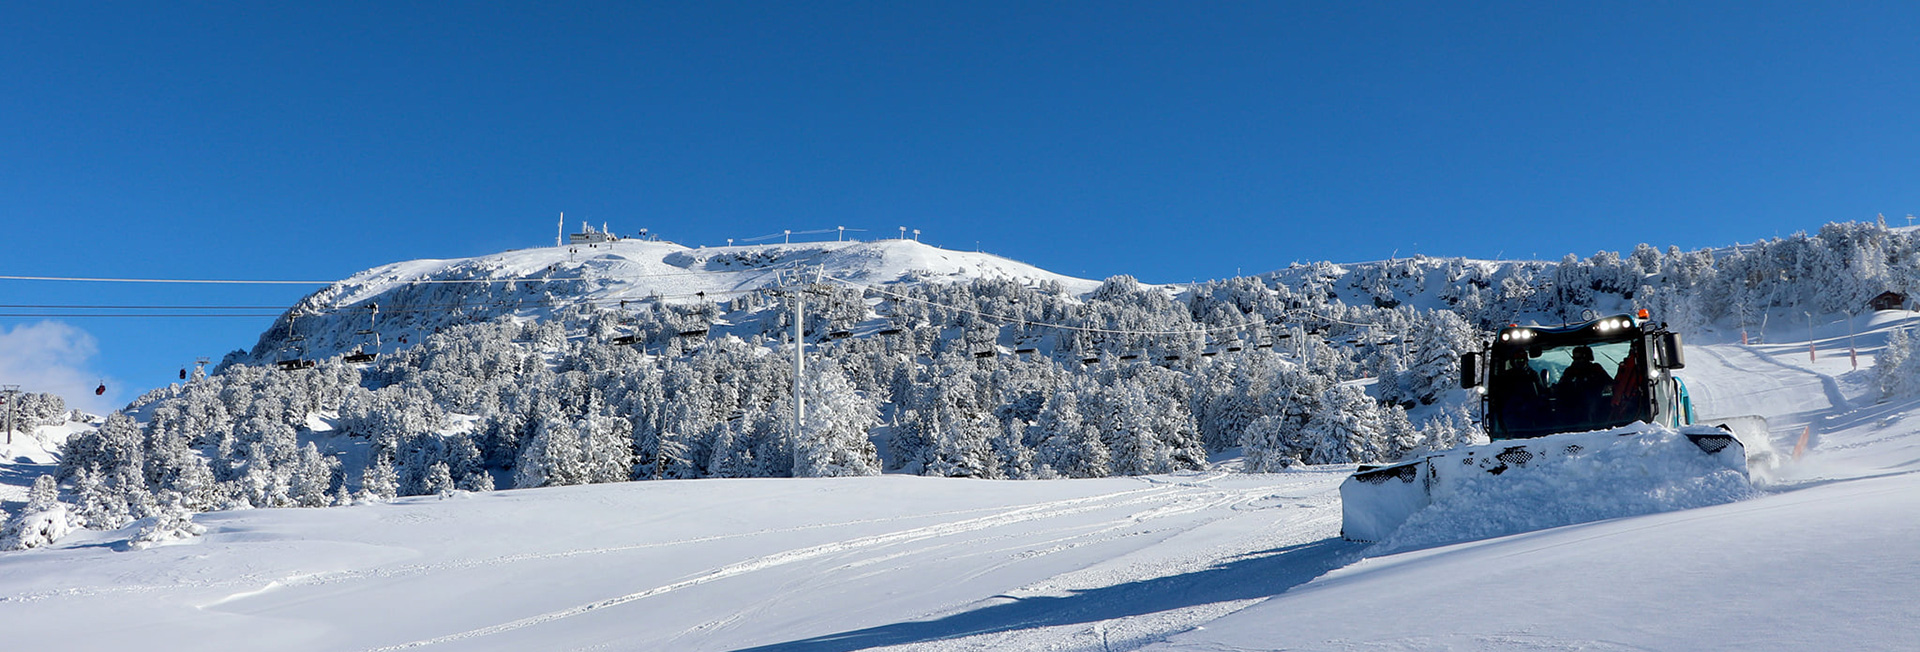 Chamrousse ski slope winter mountain ski resort grenoble isere french alps france - © Guillaume Deschanel - RM Chamrousse